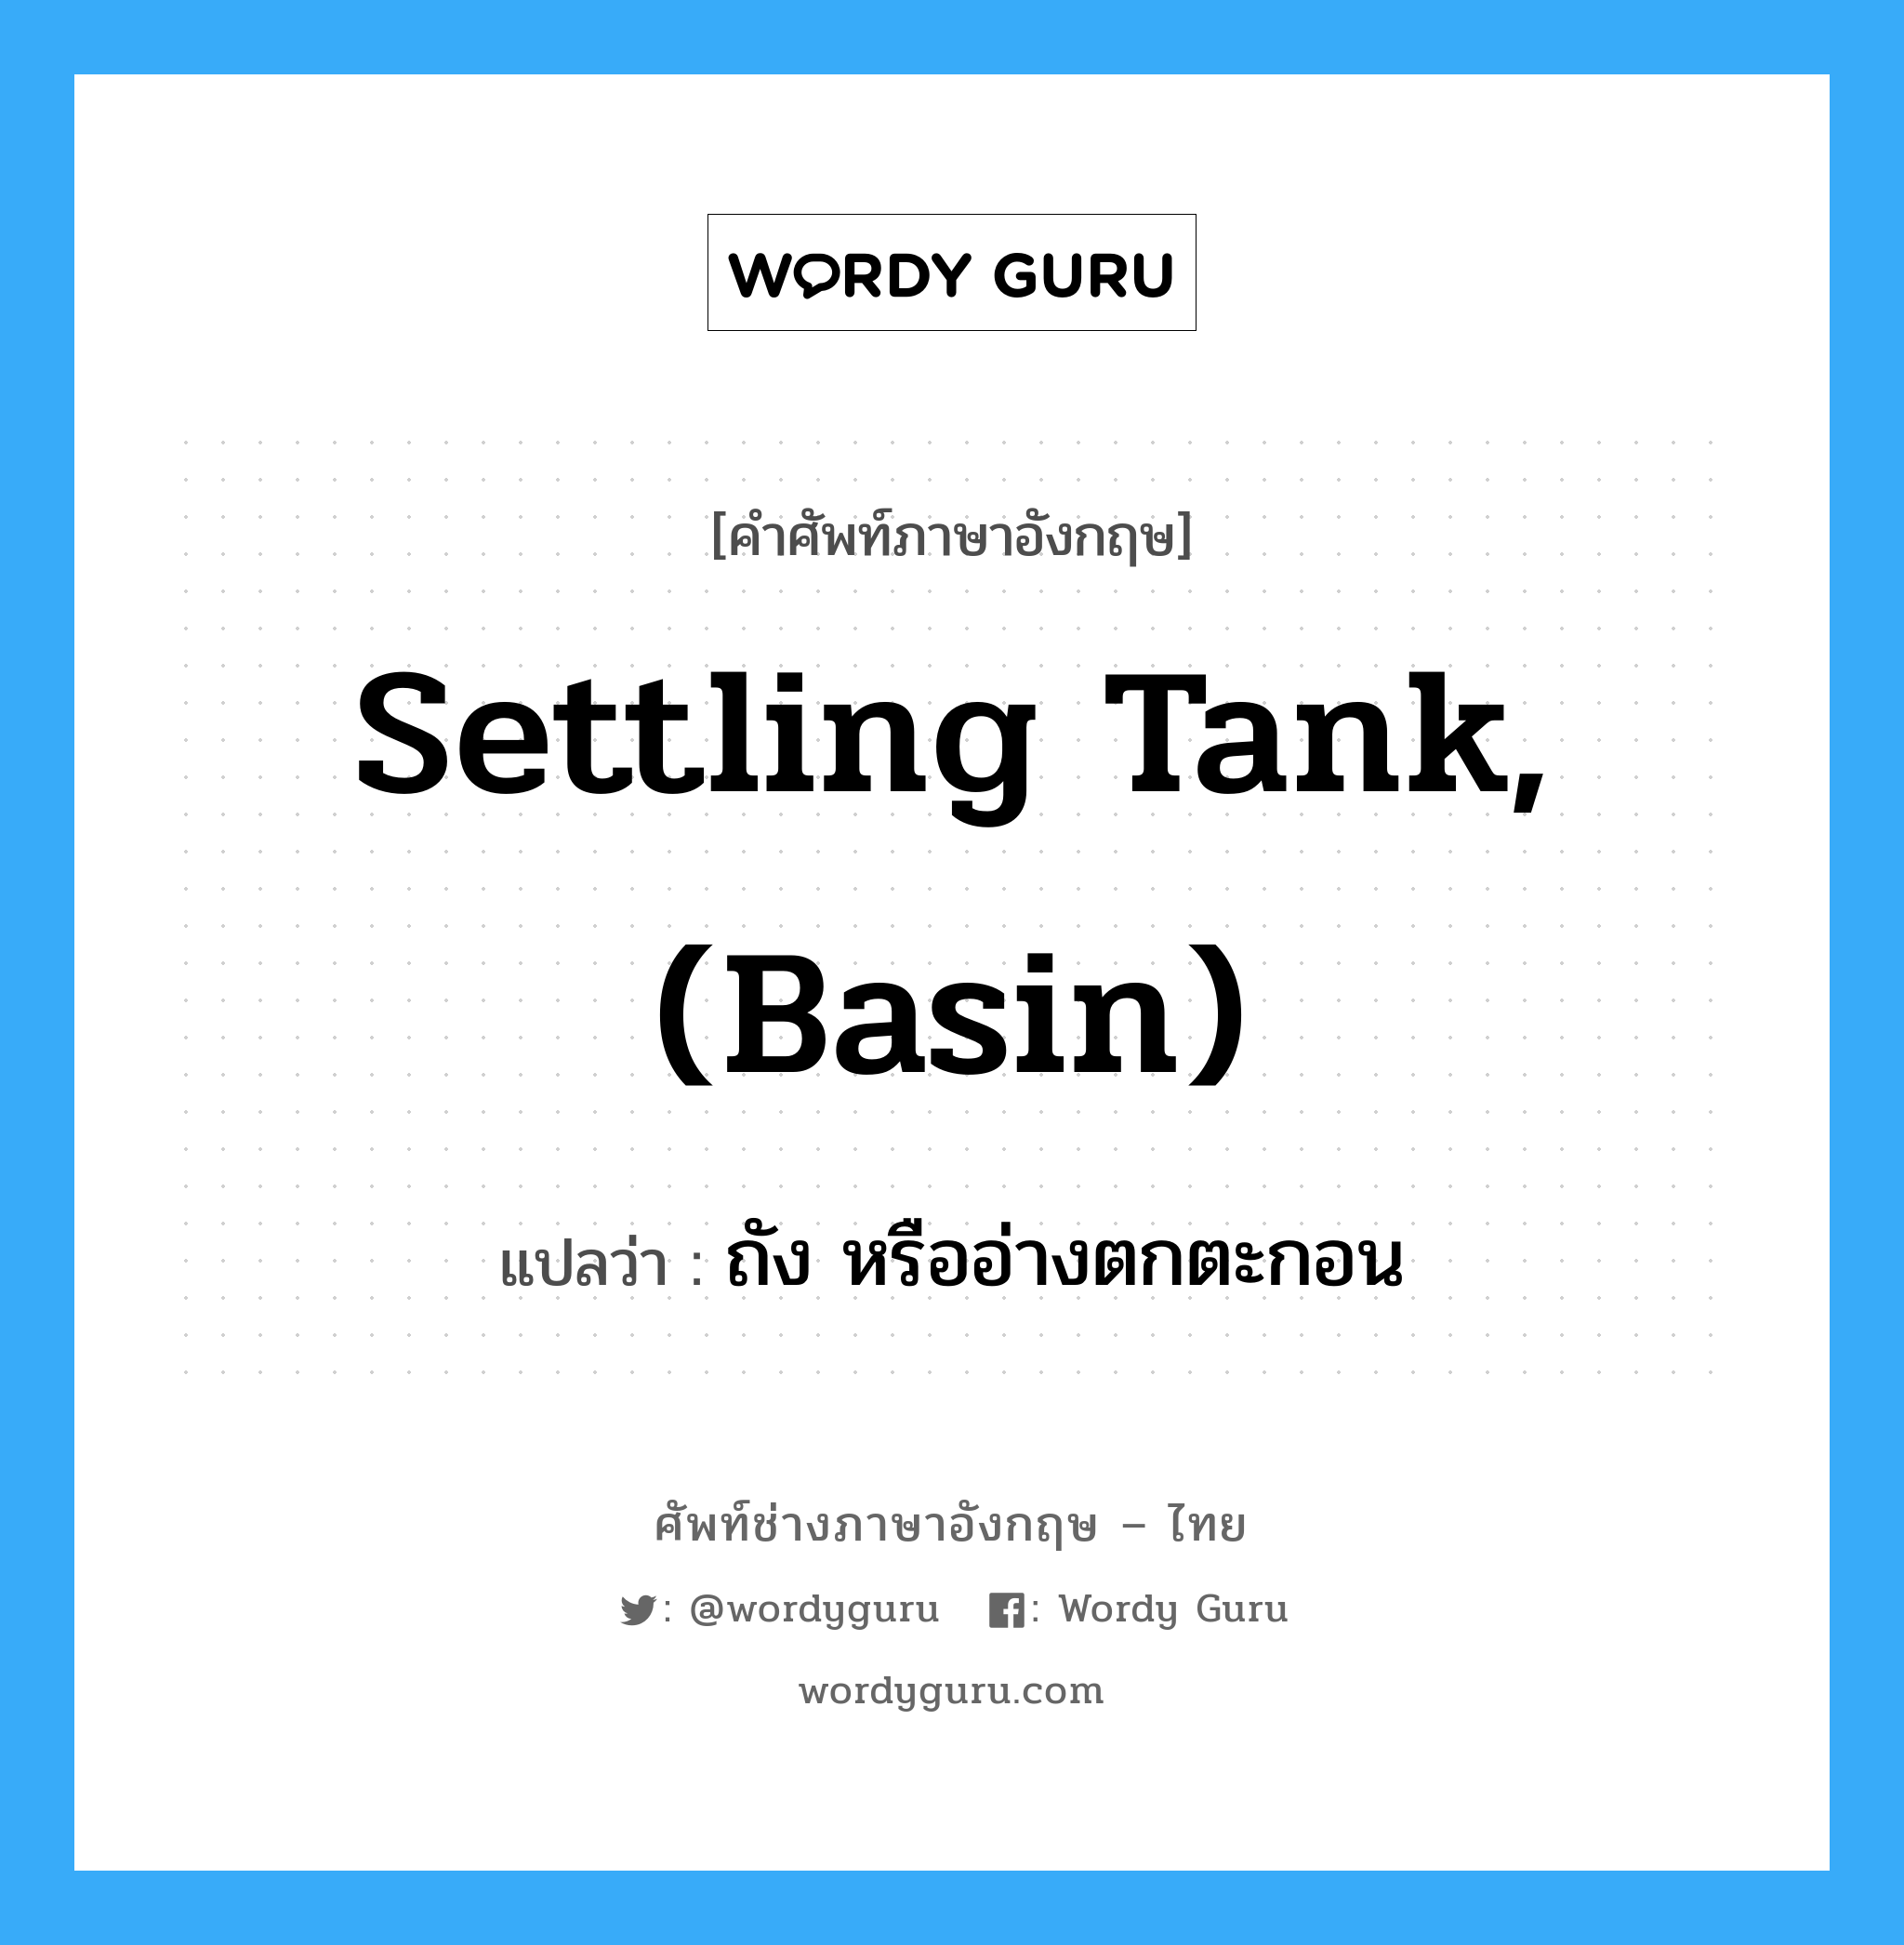 ถัง หรืออ่างตกตะกอน ภาษาอังกฤษ?, คำศัพท์ช่างภาษาอังกฤษ - ไทย ถัง หรืออ่างตกตะกอน คำศัพท์ภาษาอังกฤษ ถัง หรืออ่างตกตะกอน แปลว่า settling tank, (basin)